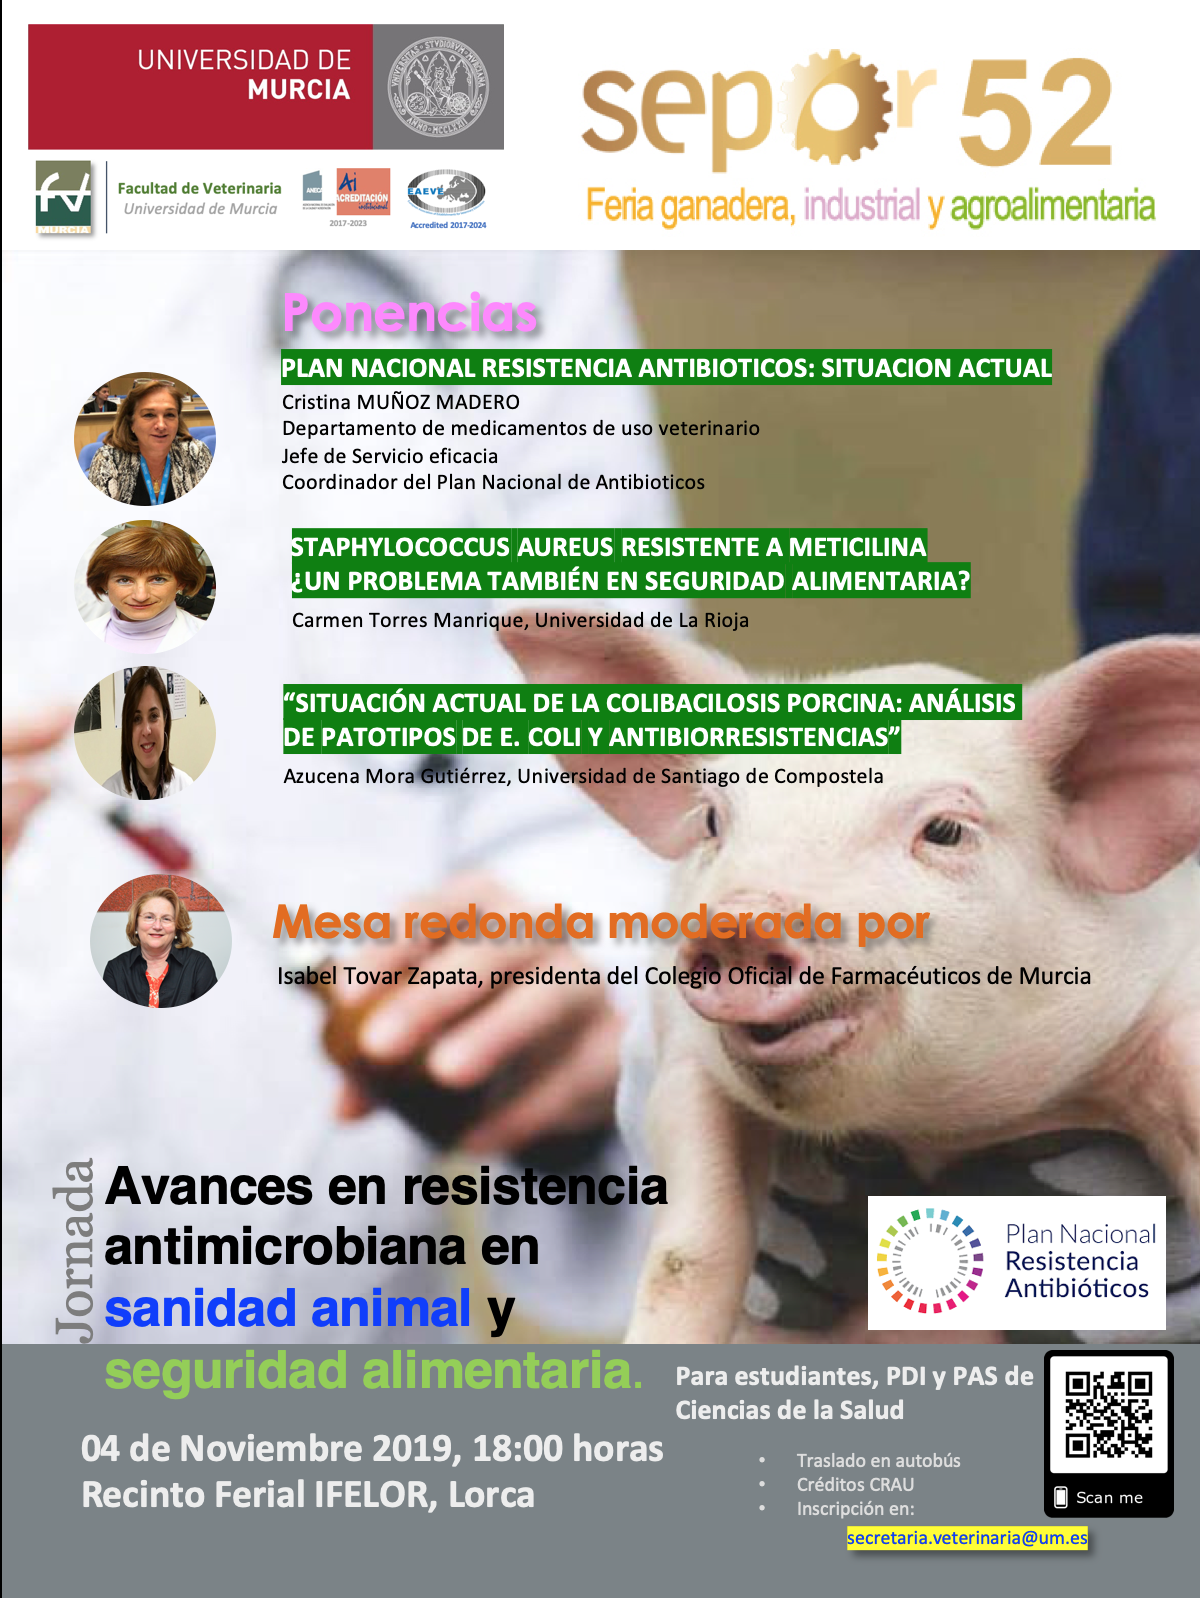 Avances en resistencia antimicrobiana en sanidad animal y seguridad alimentaria